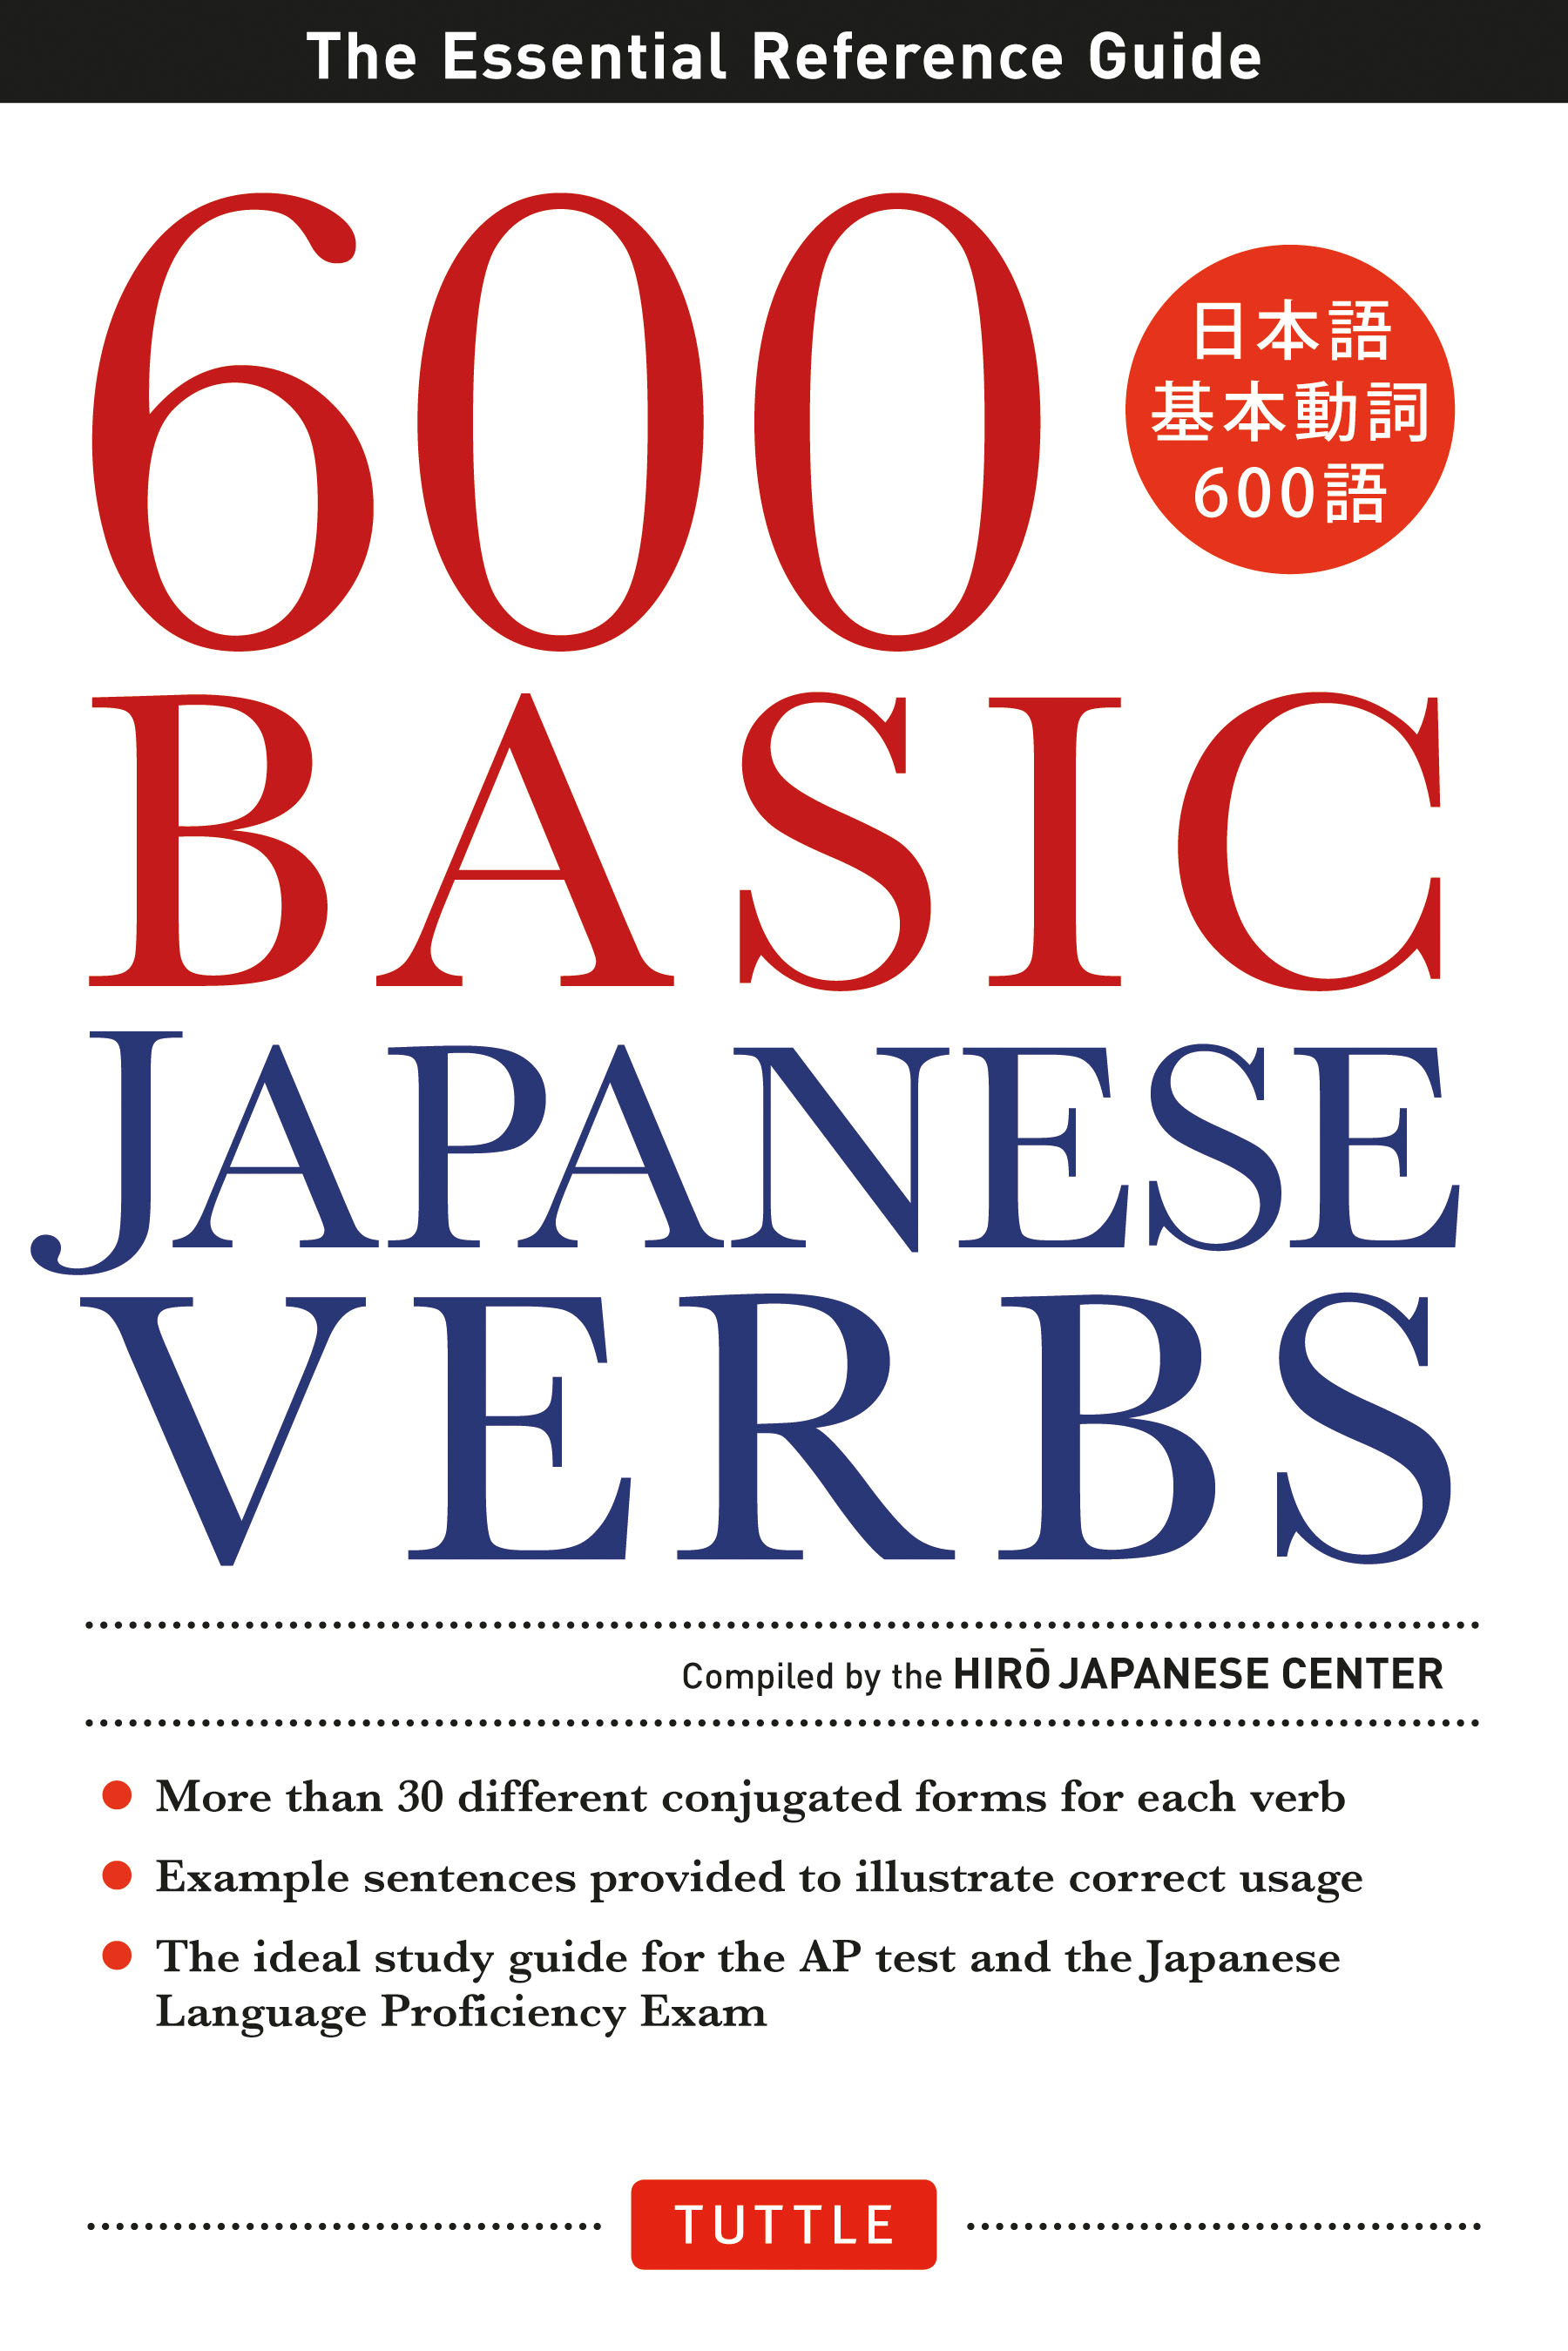 600 basic Japanese verbs